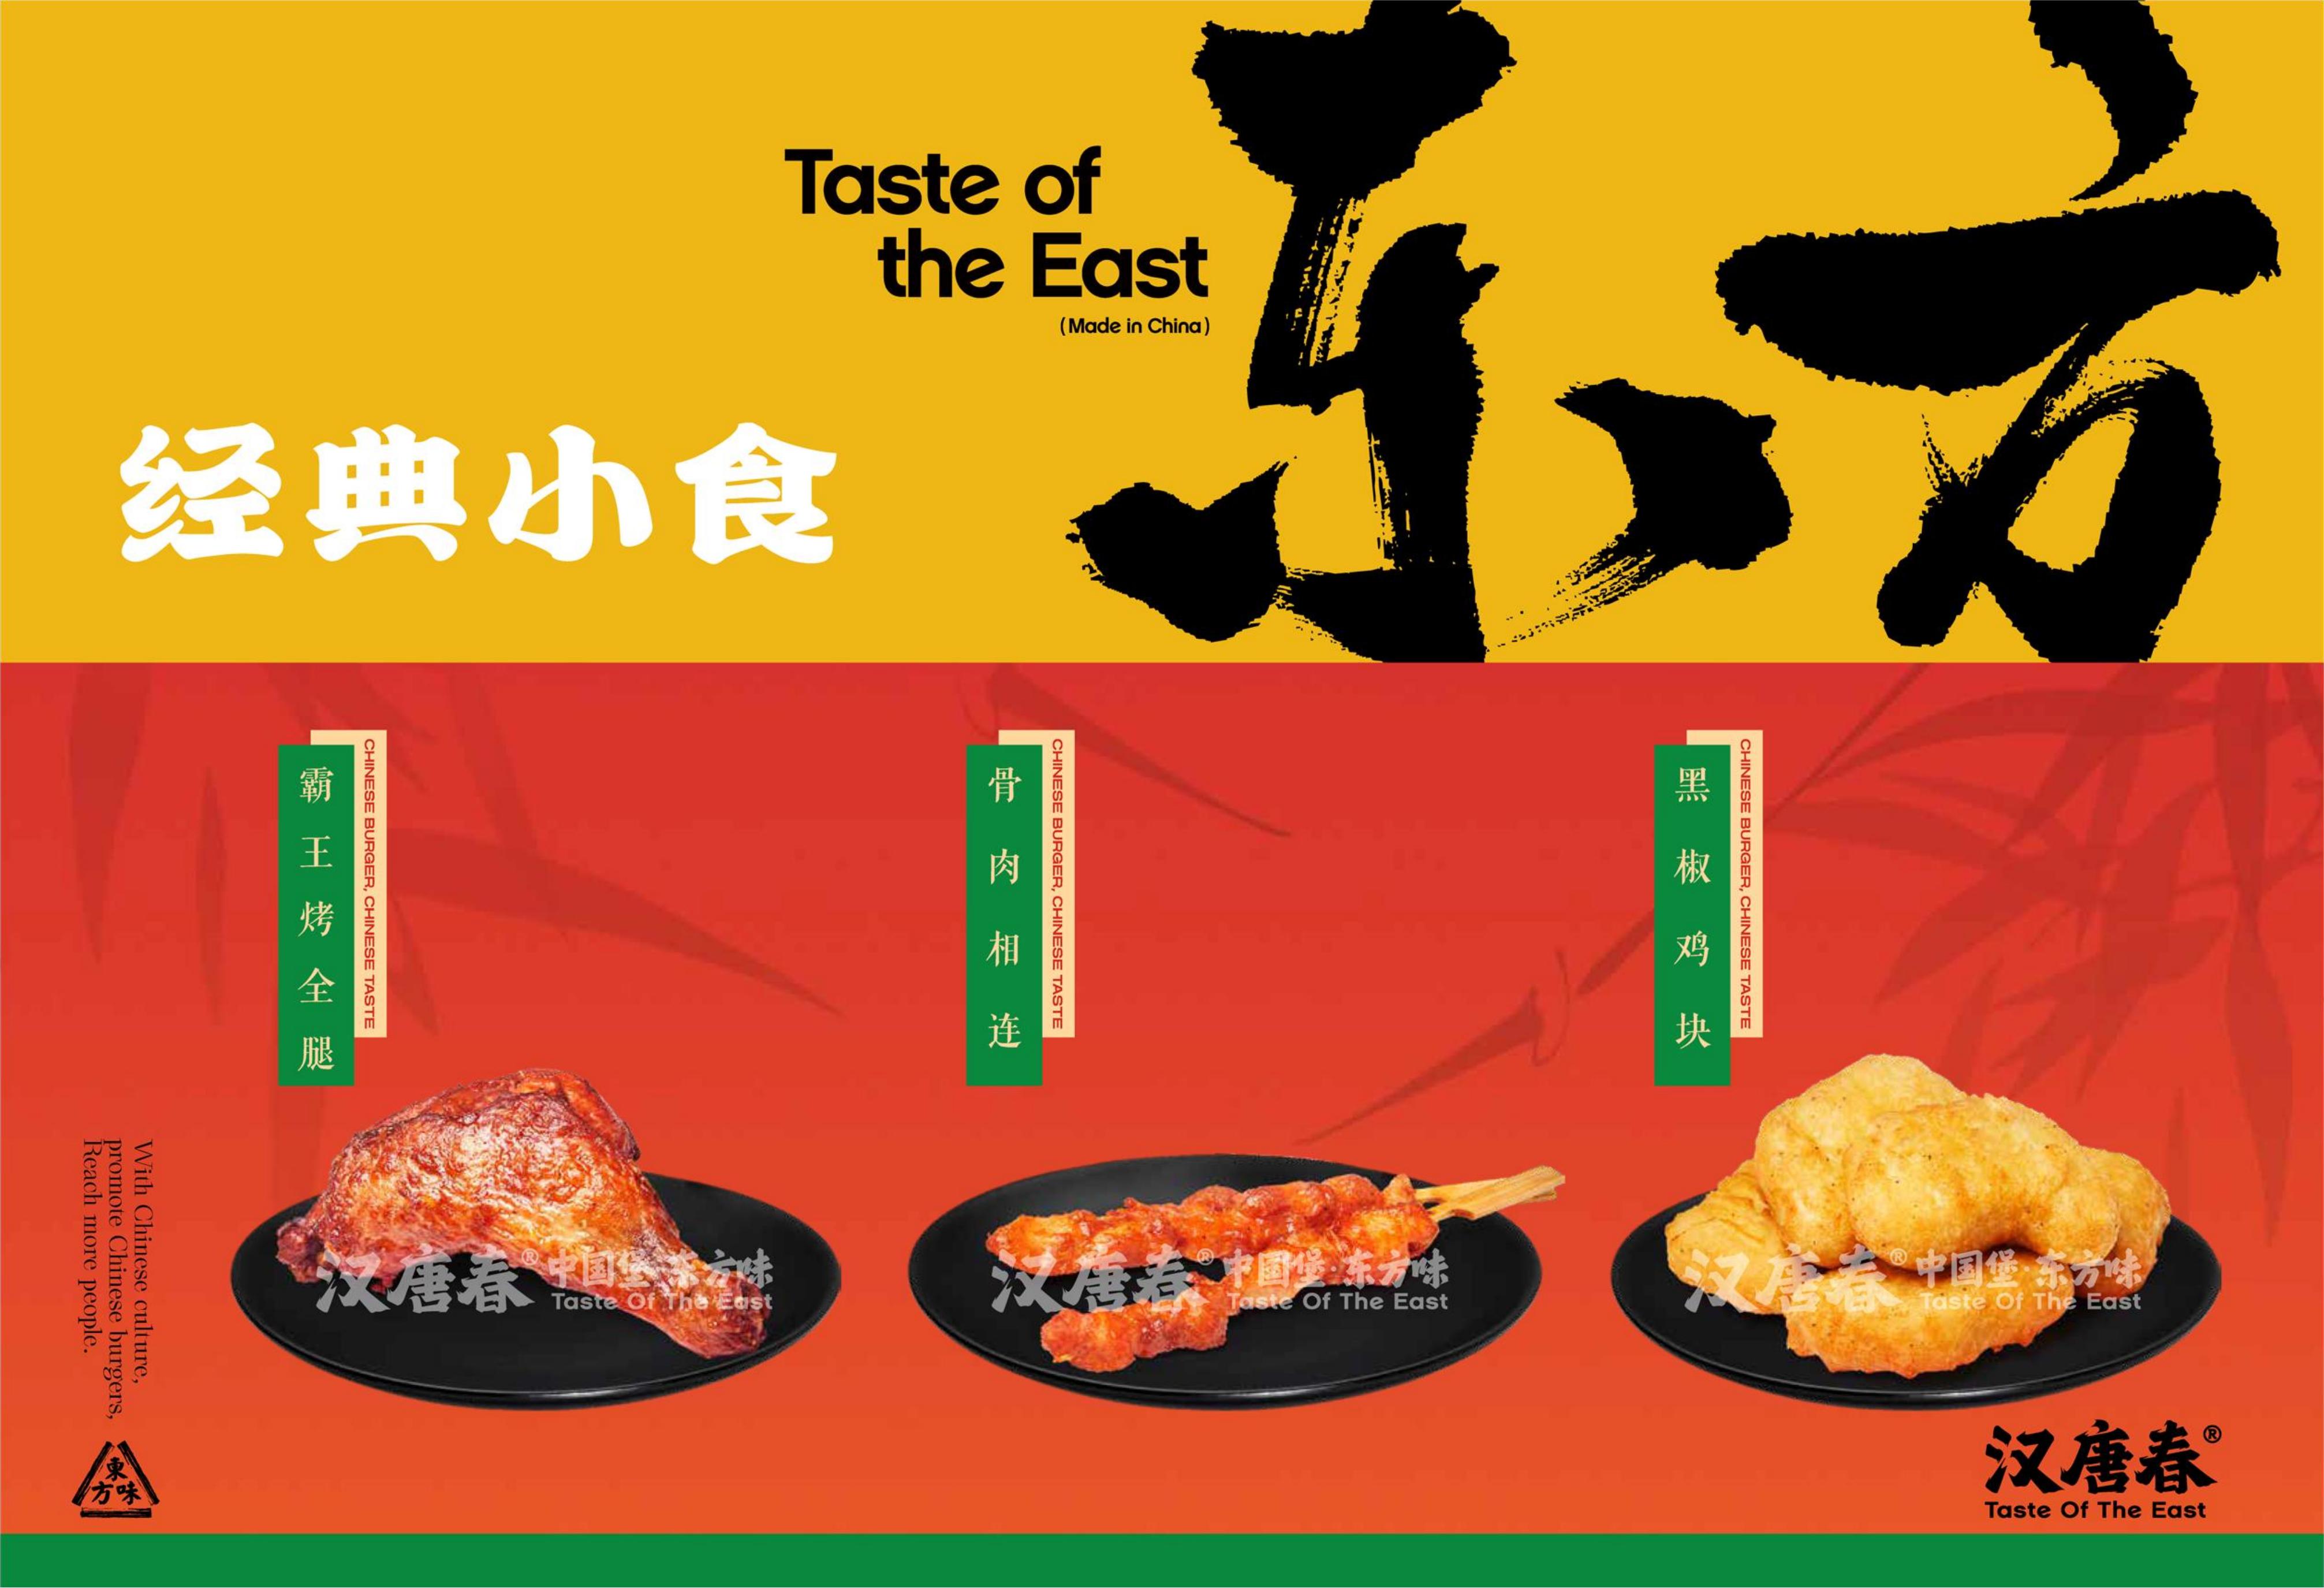 中国汉堡经典小食黑椒鸡块